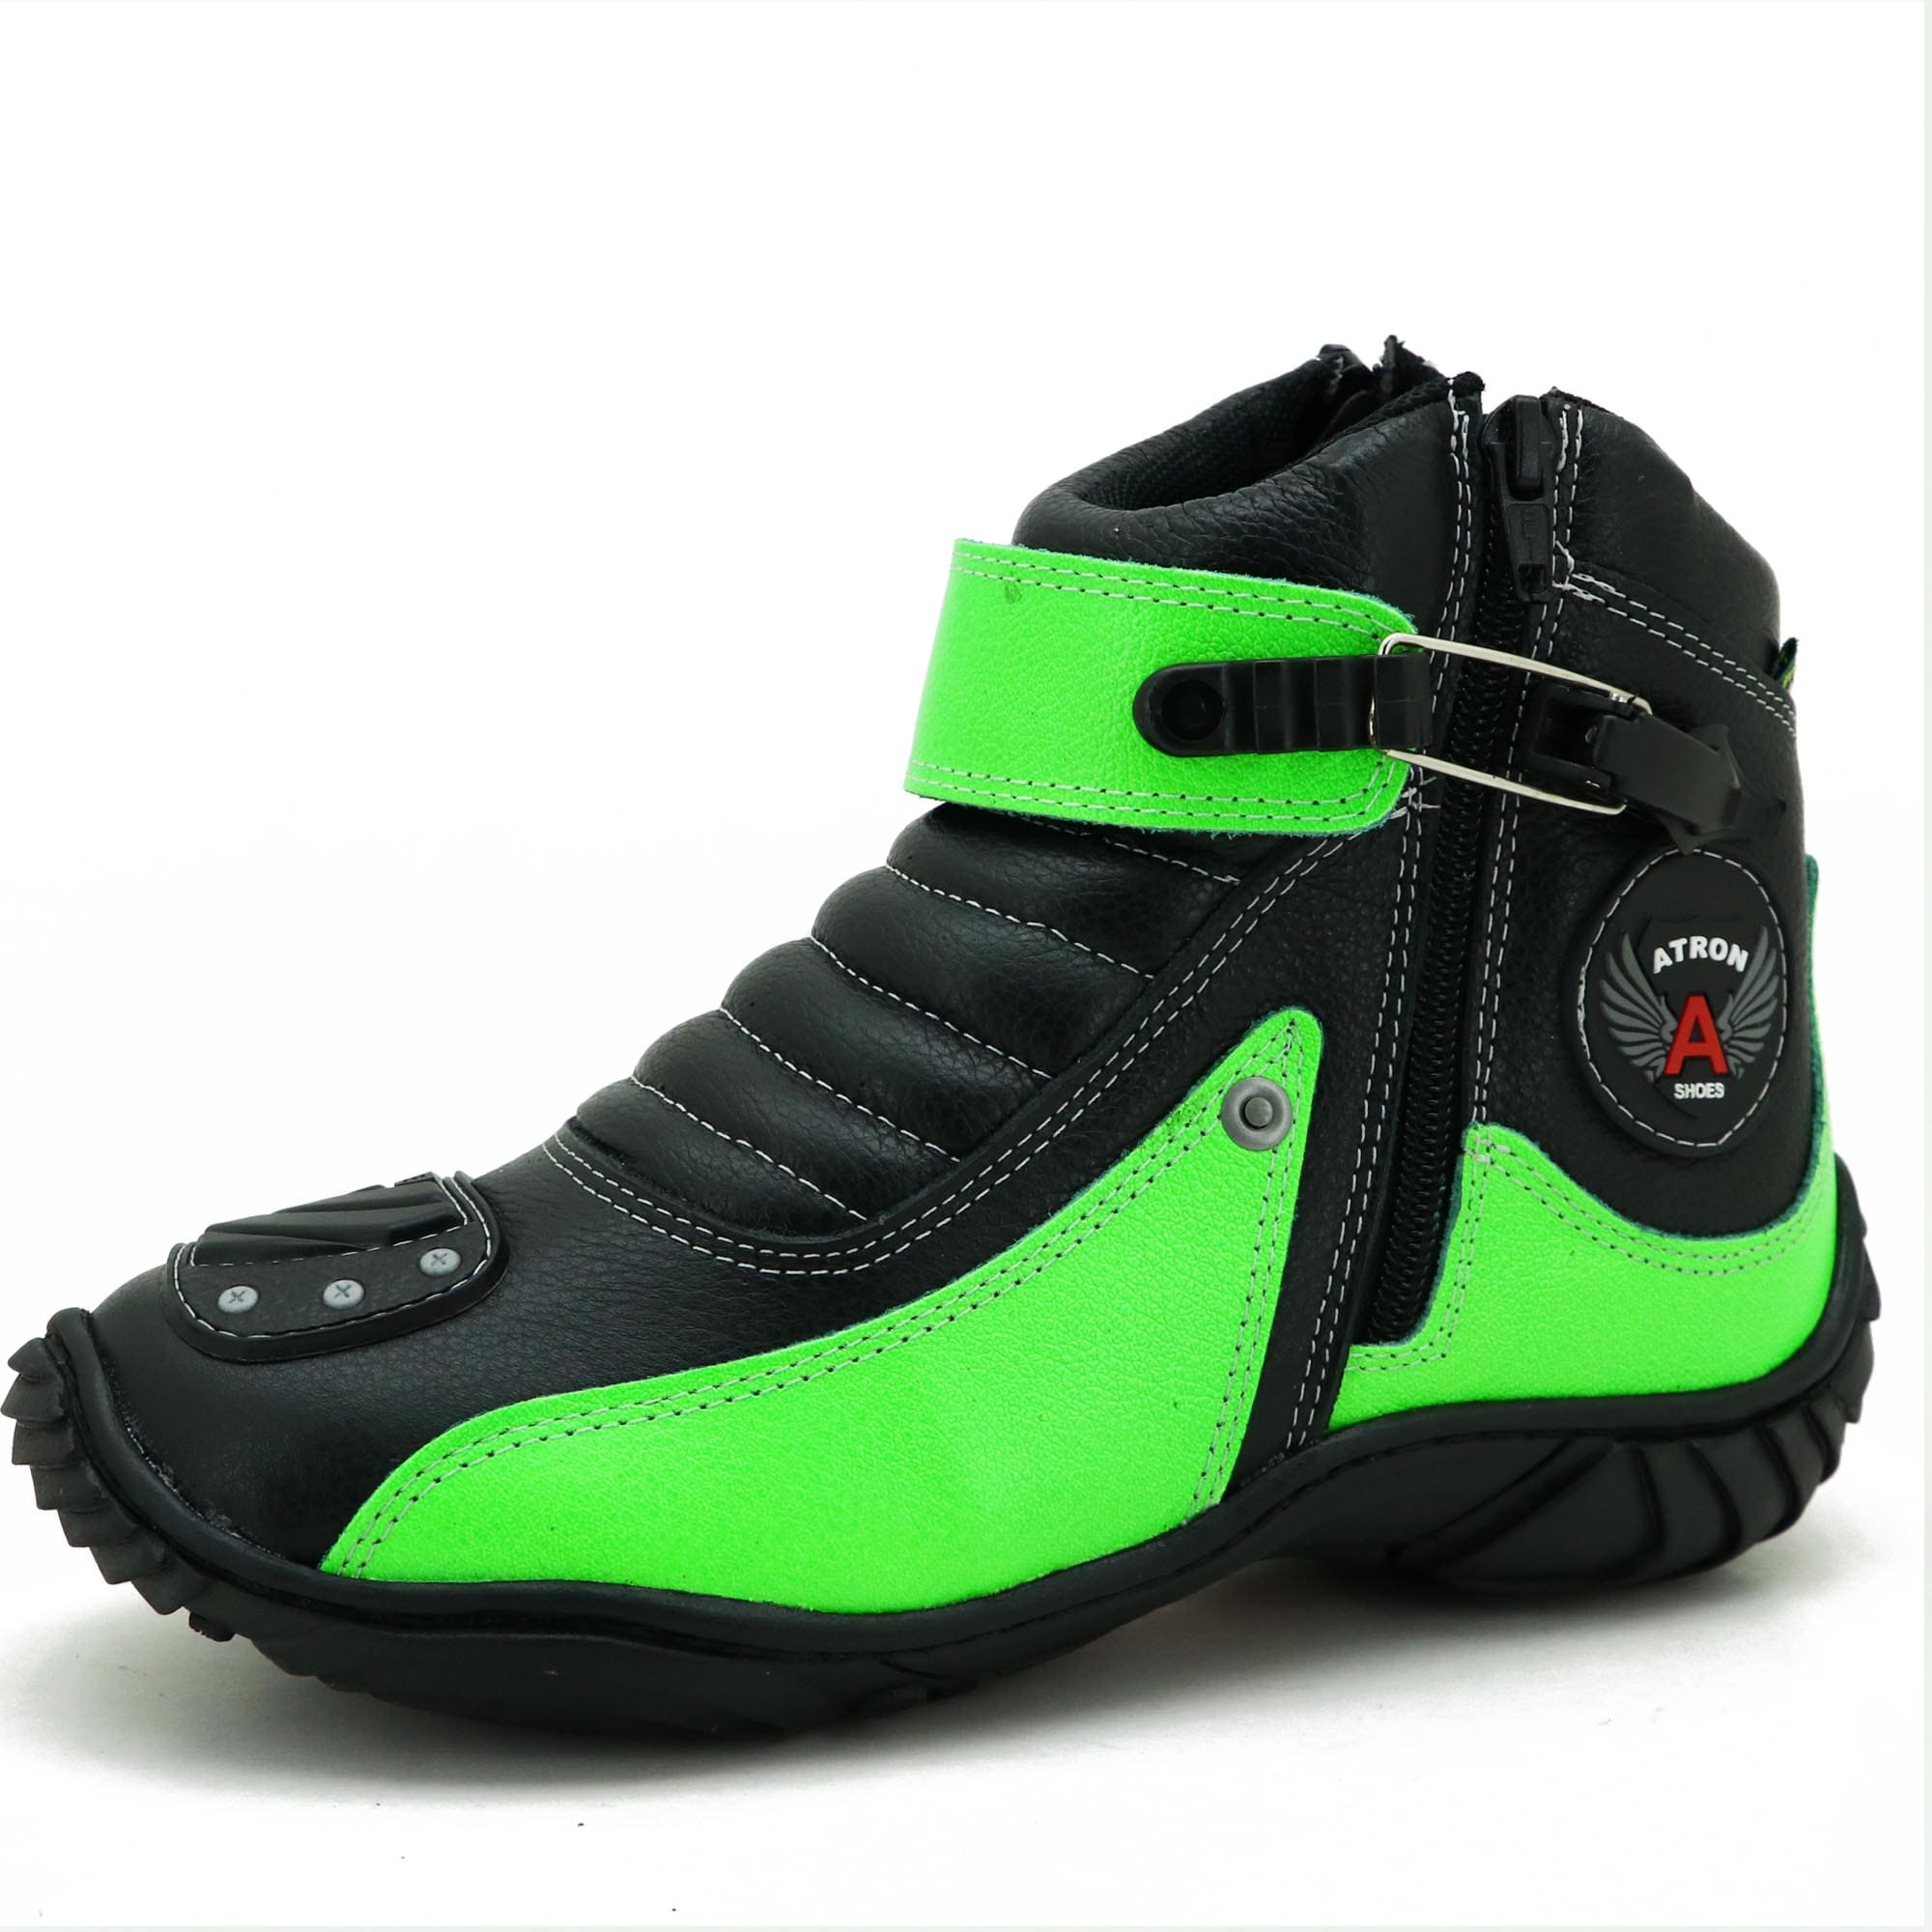 Bota motociclista Atron Shoes preta e verde em couro legítimo 271